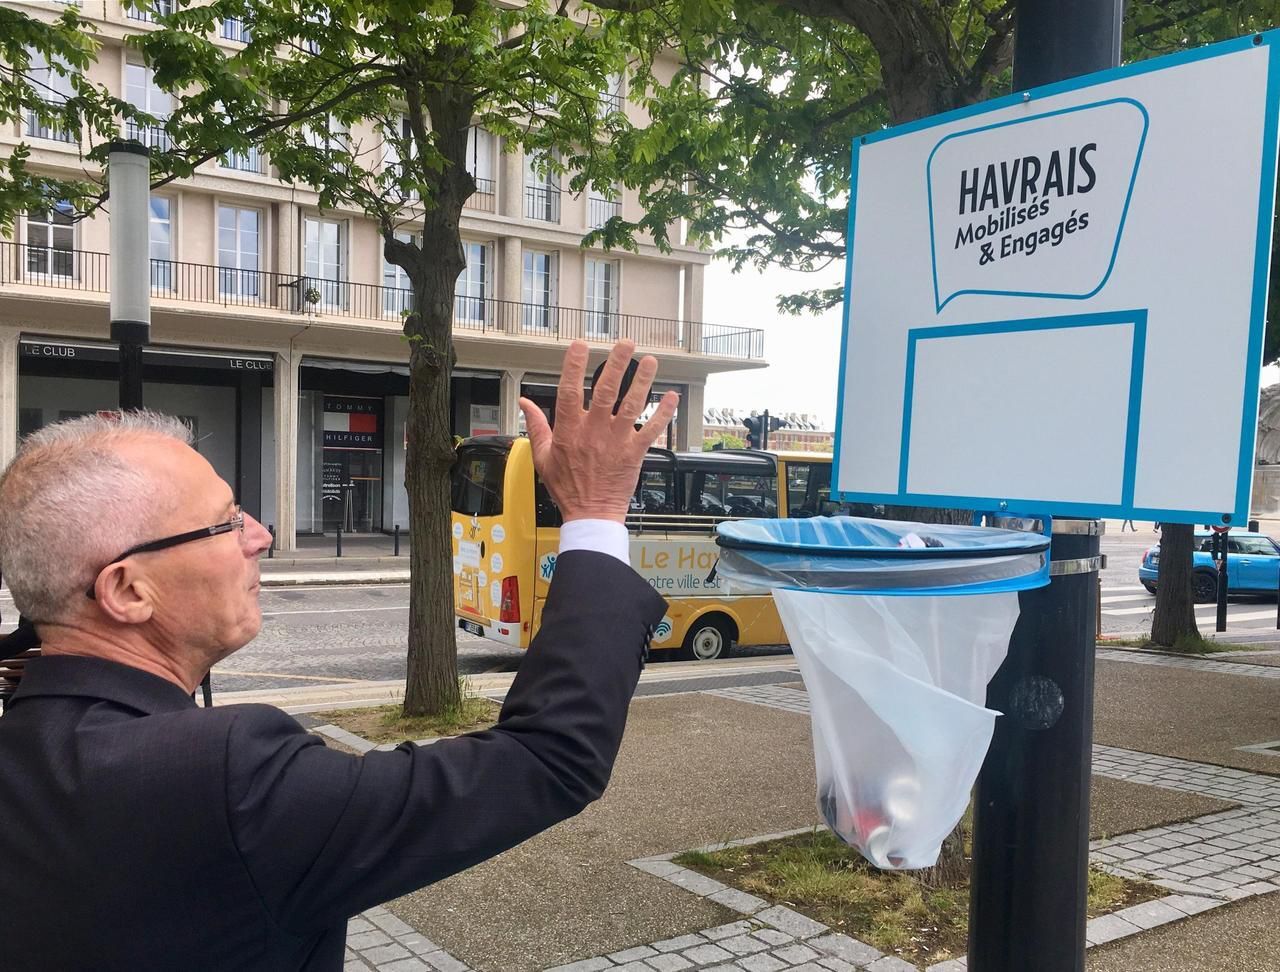 Marelles, paniers de basket… Le Havre mise sur le ludique pour la propreté  en ville